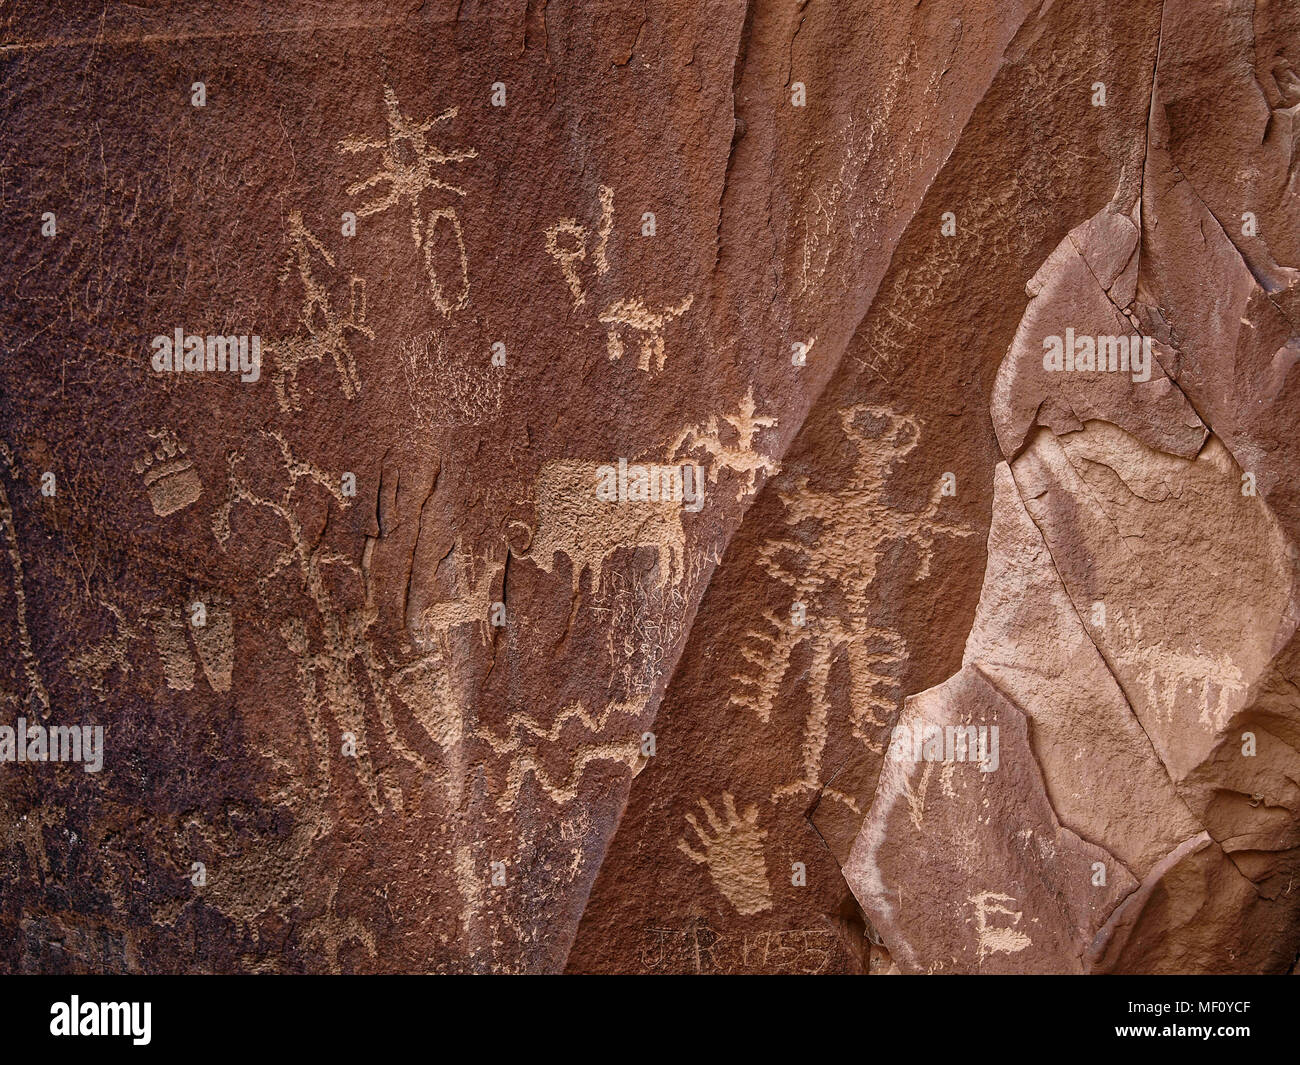 Newspaper Rock nativi indiani americani sono stati incisione e disegno su Newspaper Rock in Utah per più di duemila anni. Le marcature in queste rovine narrano le storie, modelli di caccia, cicli di raccolto e mitologie Foto Stock